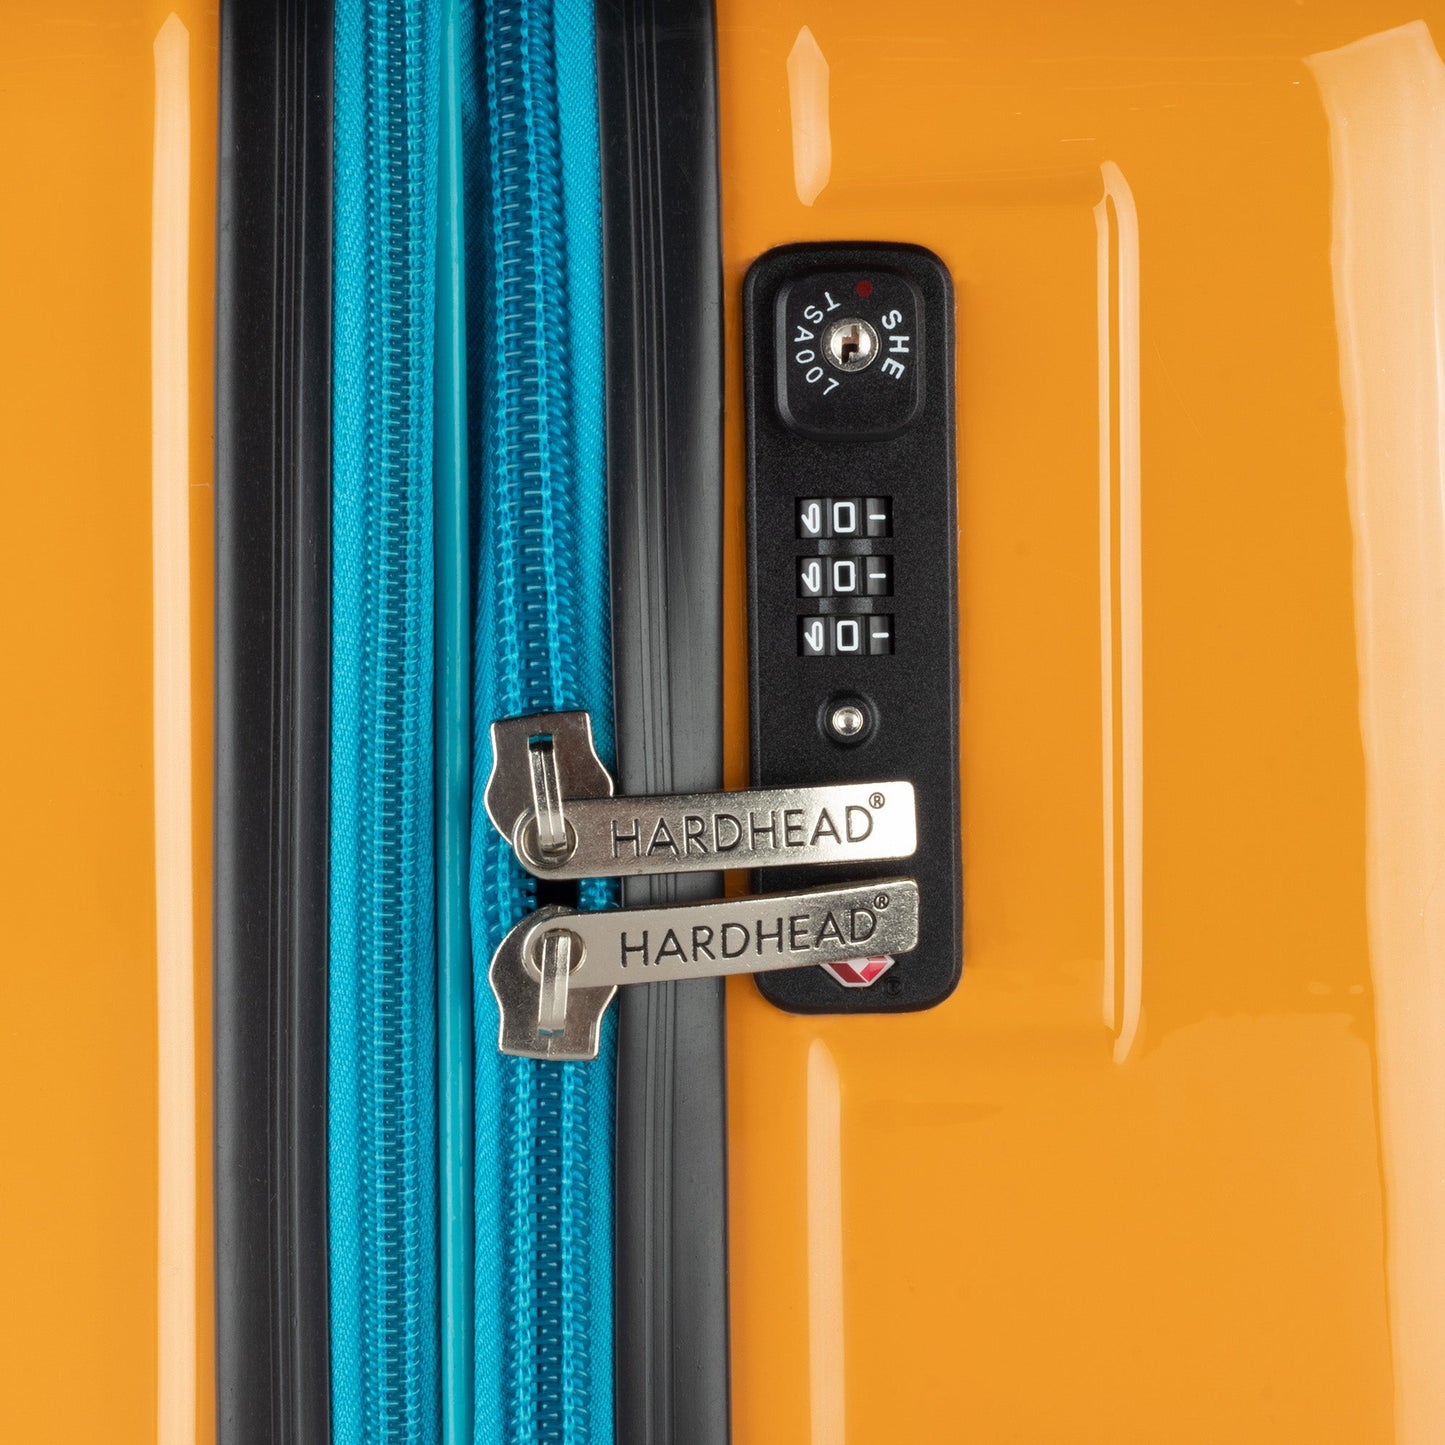 Denisse Collection Orange Luggage (21/25/29") Suitcase Lock Spinner Hardshell